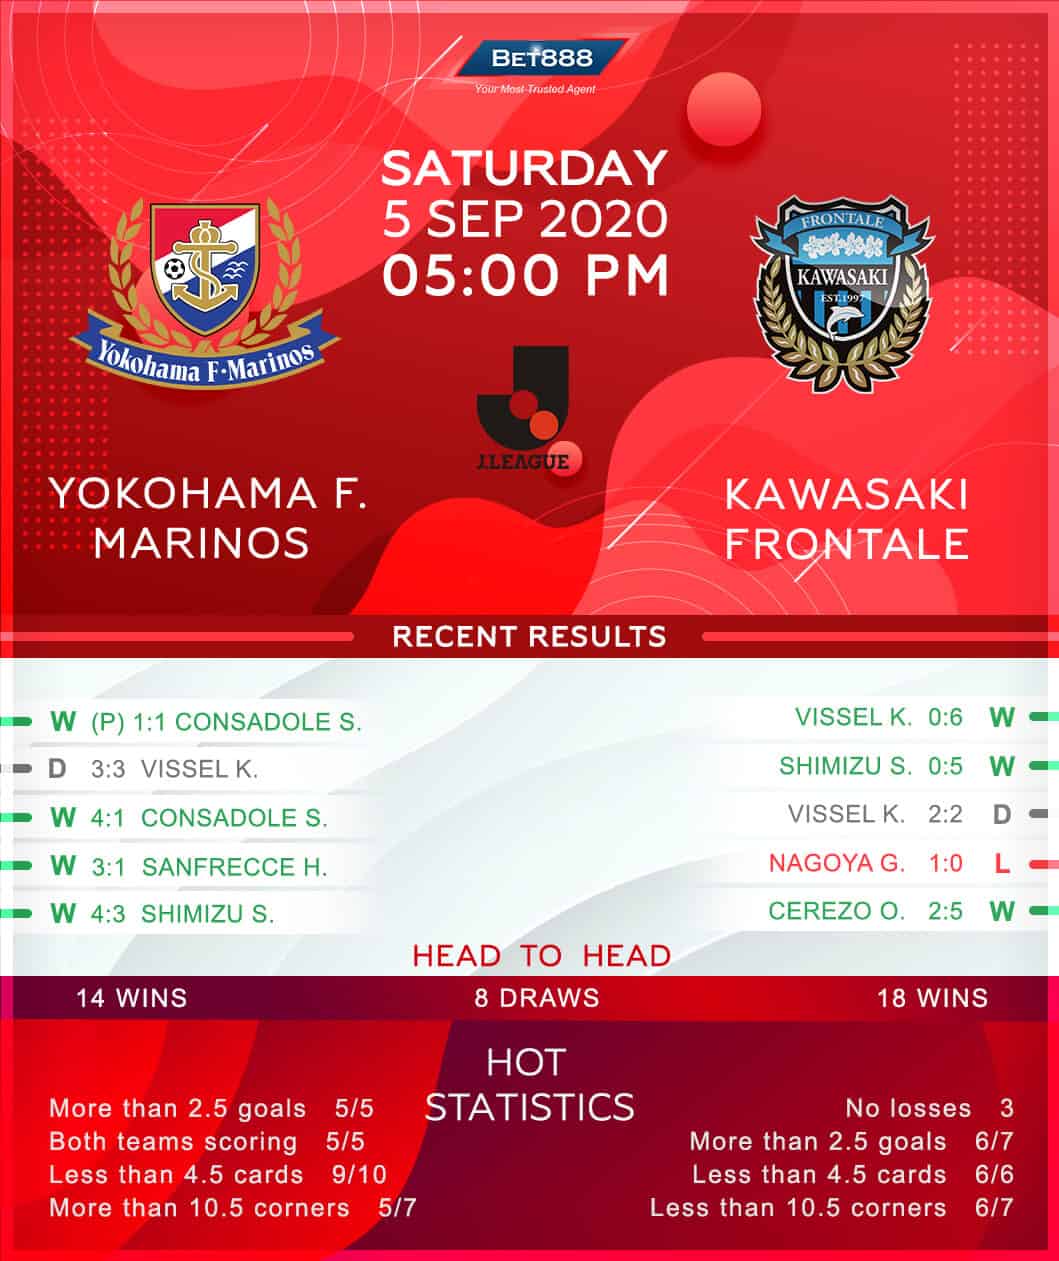 Yokohama Marinos vs Kawasaki Frontale 05/09/20